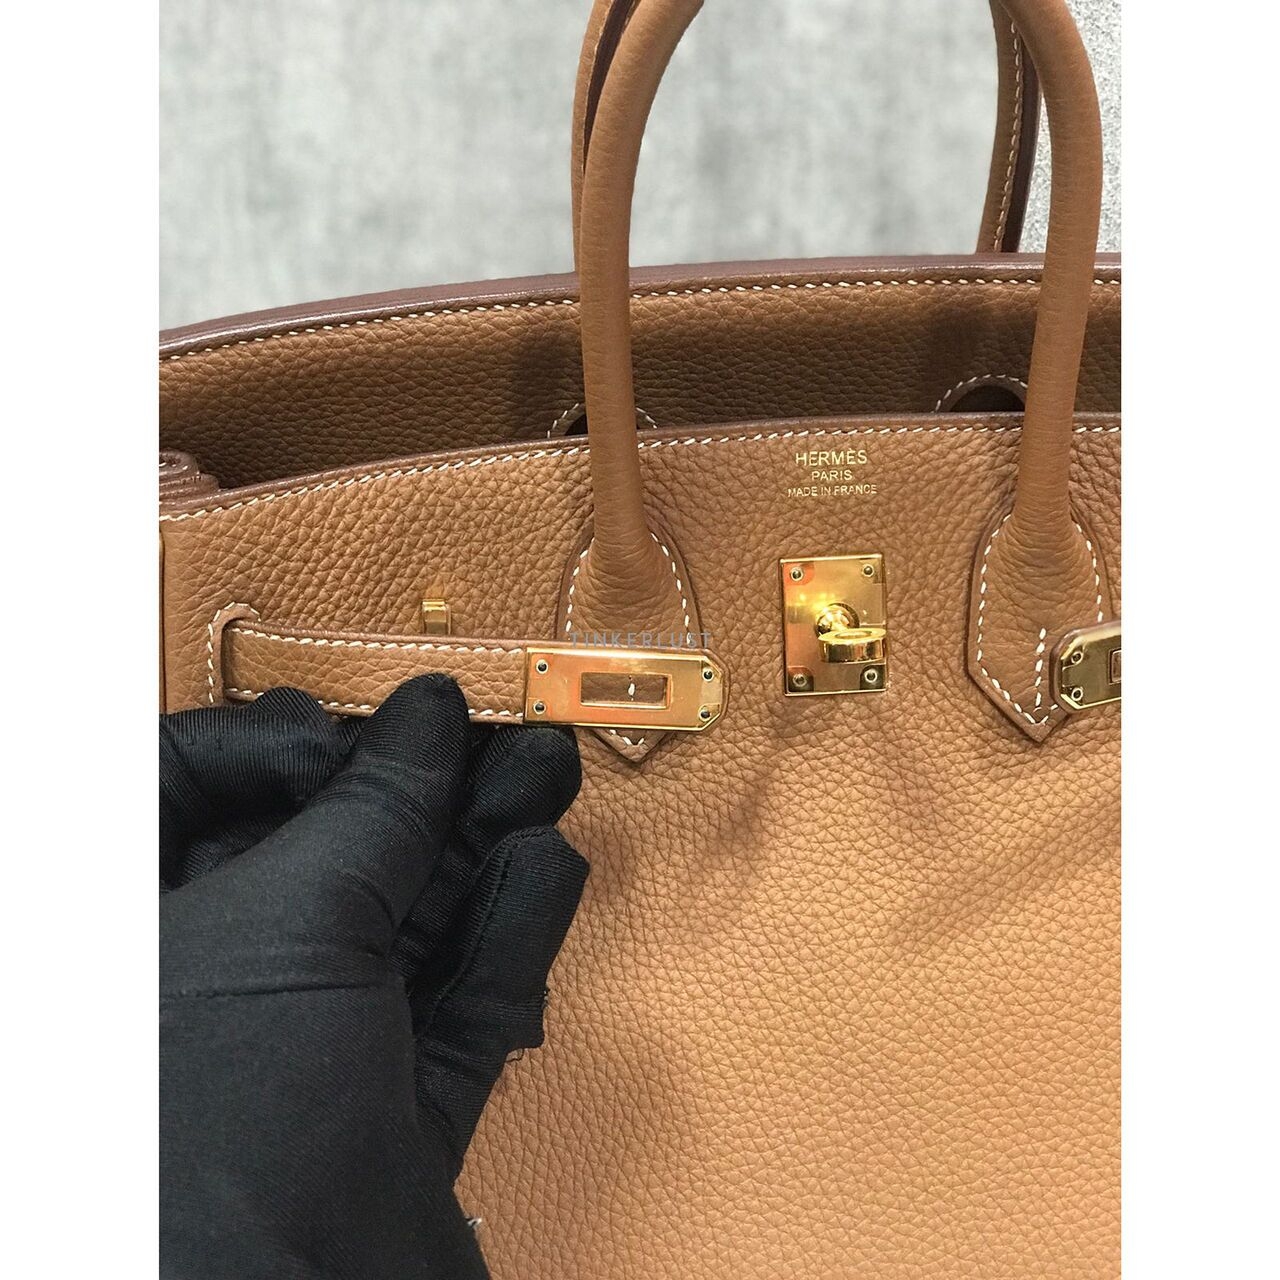 Hermes Birkin 25 Togo Gold GHW #D Handbag